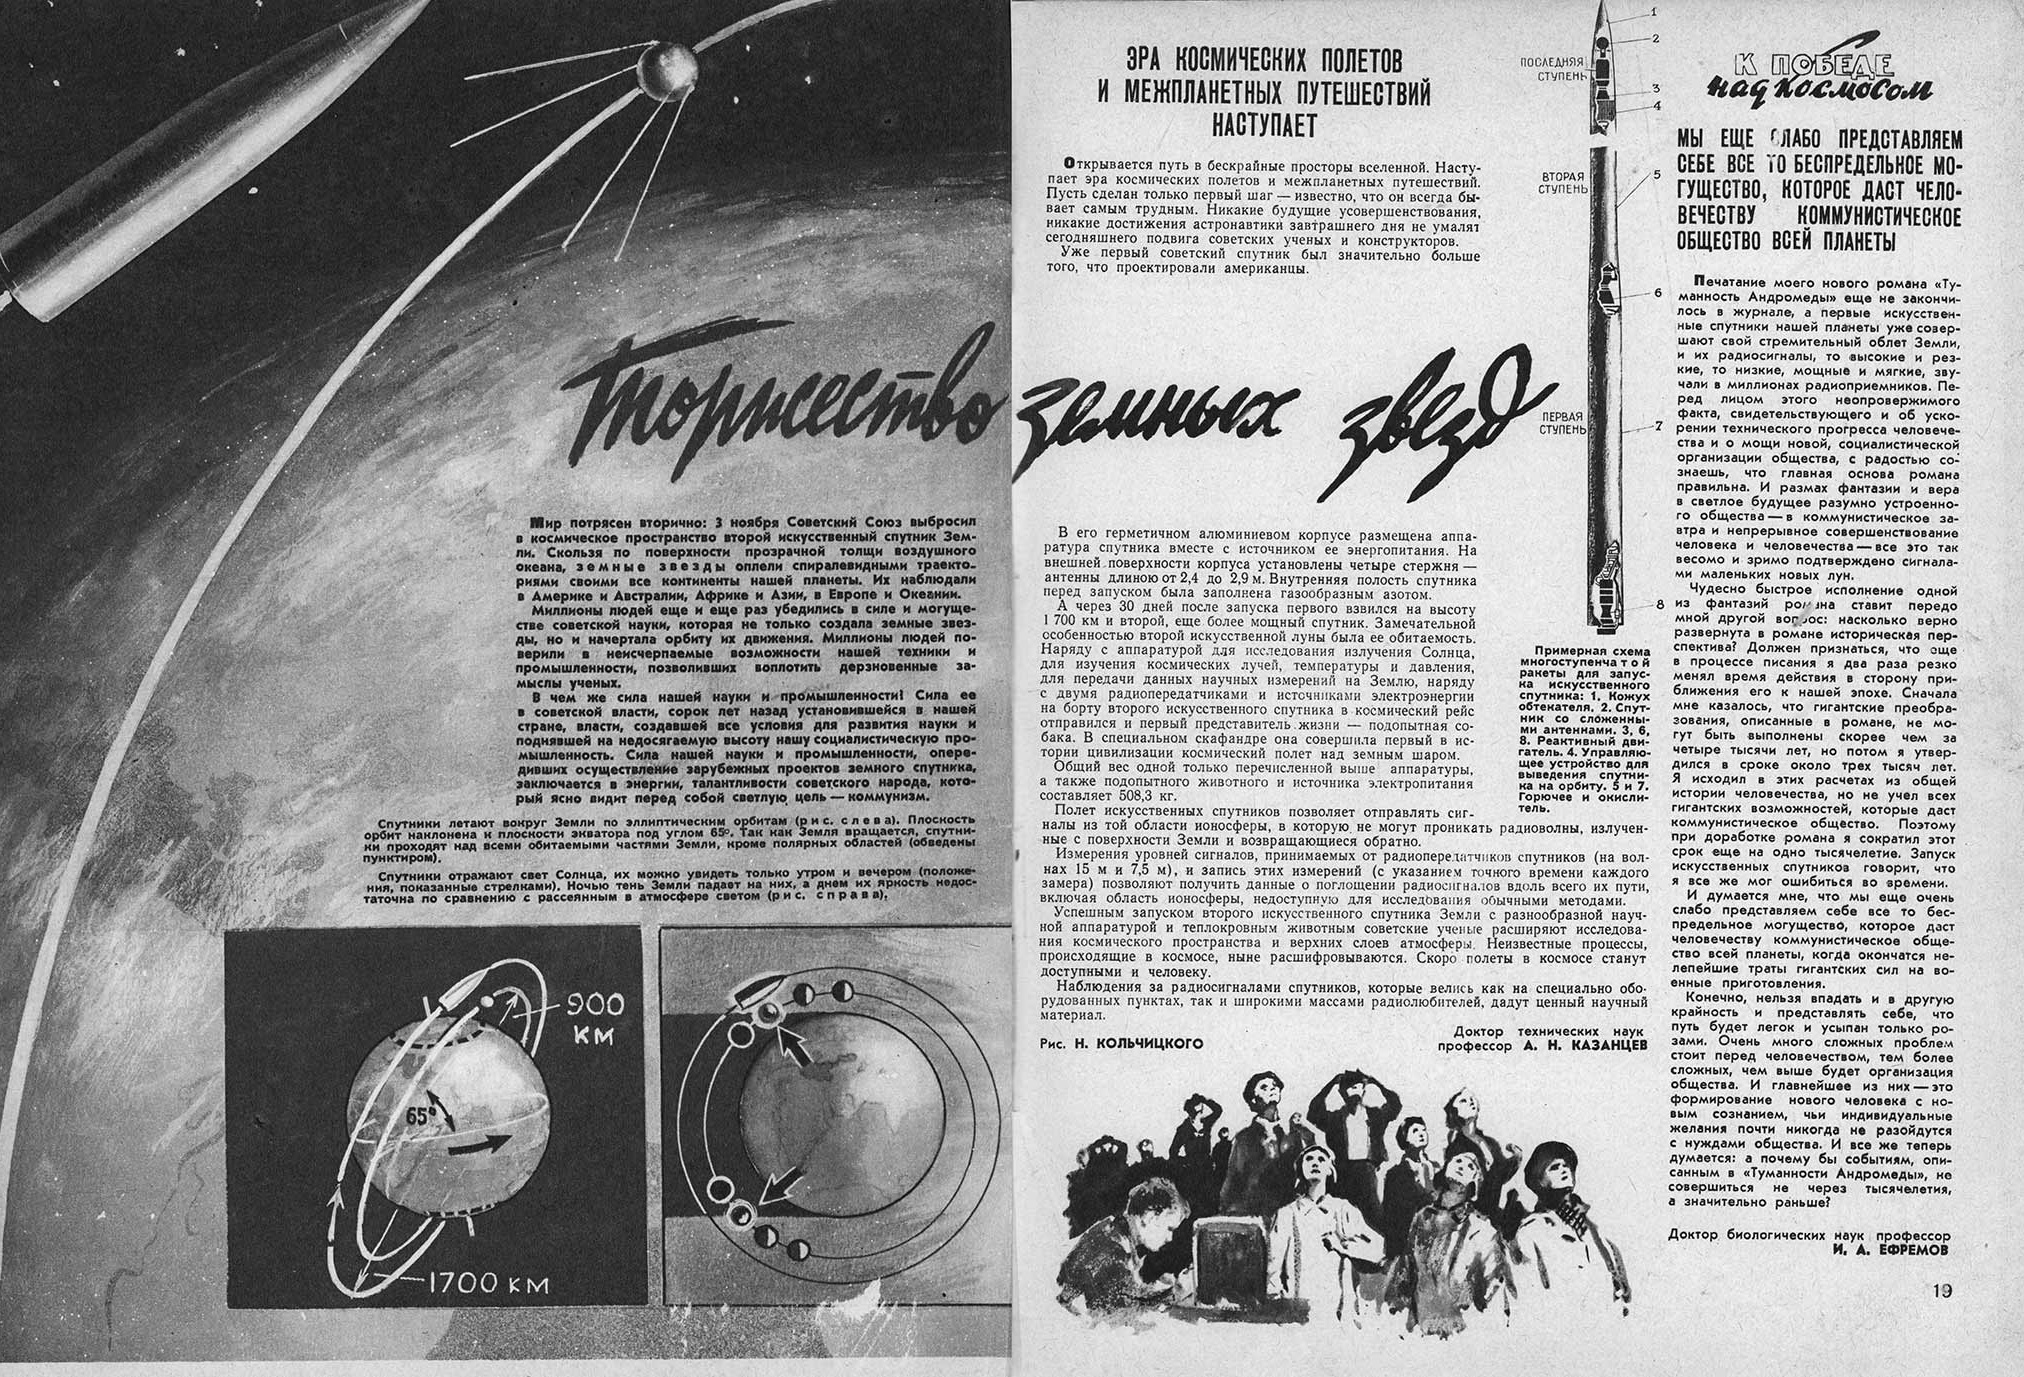 Журнал техника молодежи 1957 года